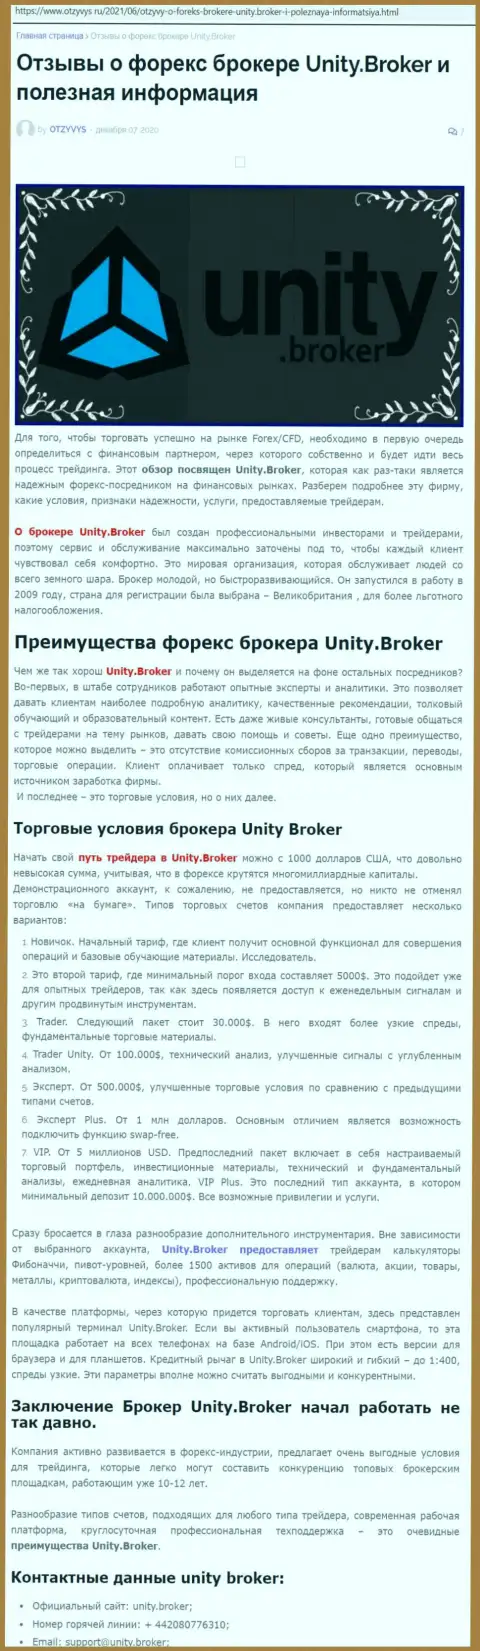 Публикация о форекс-дилинговой компании Unity Broker на интернет-портале отзывус ру